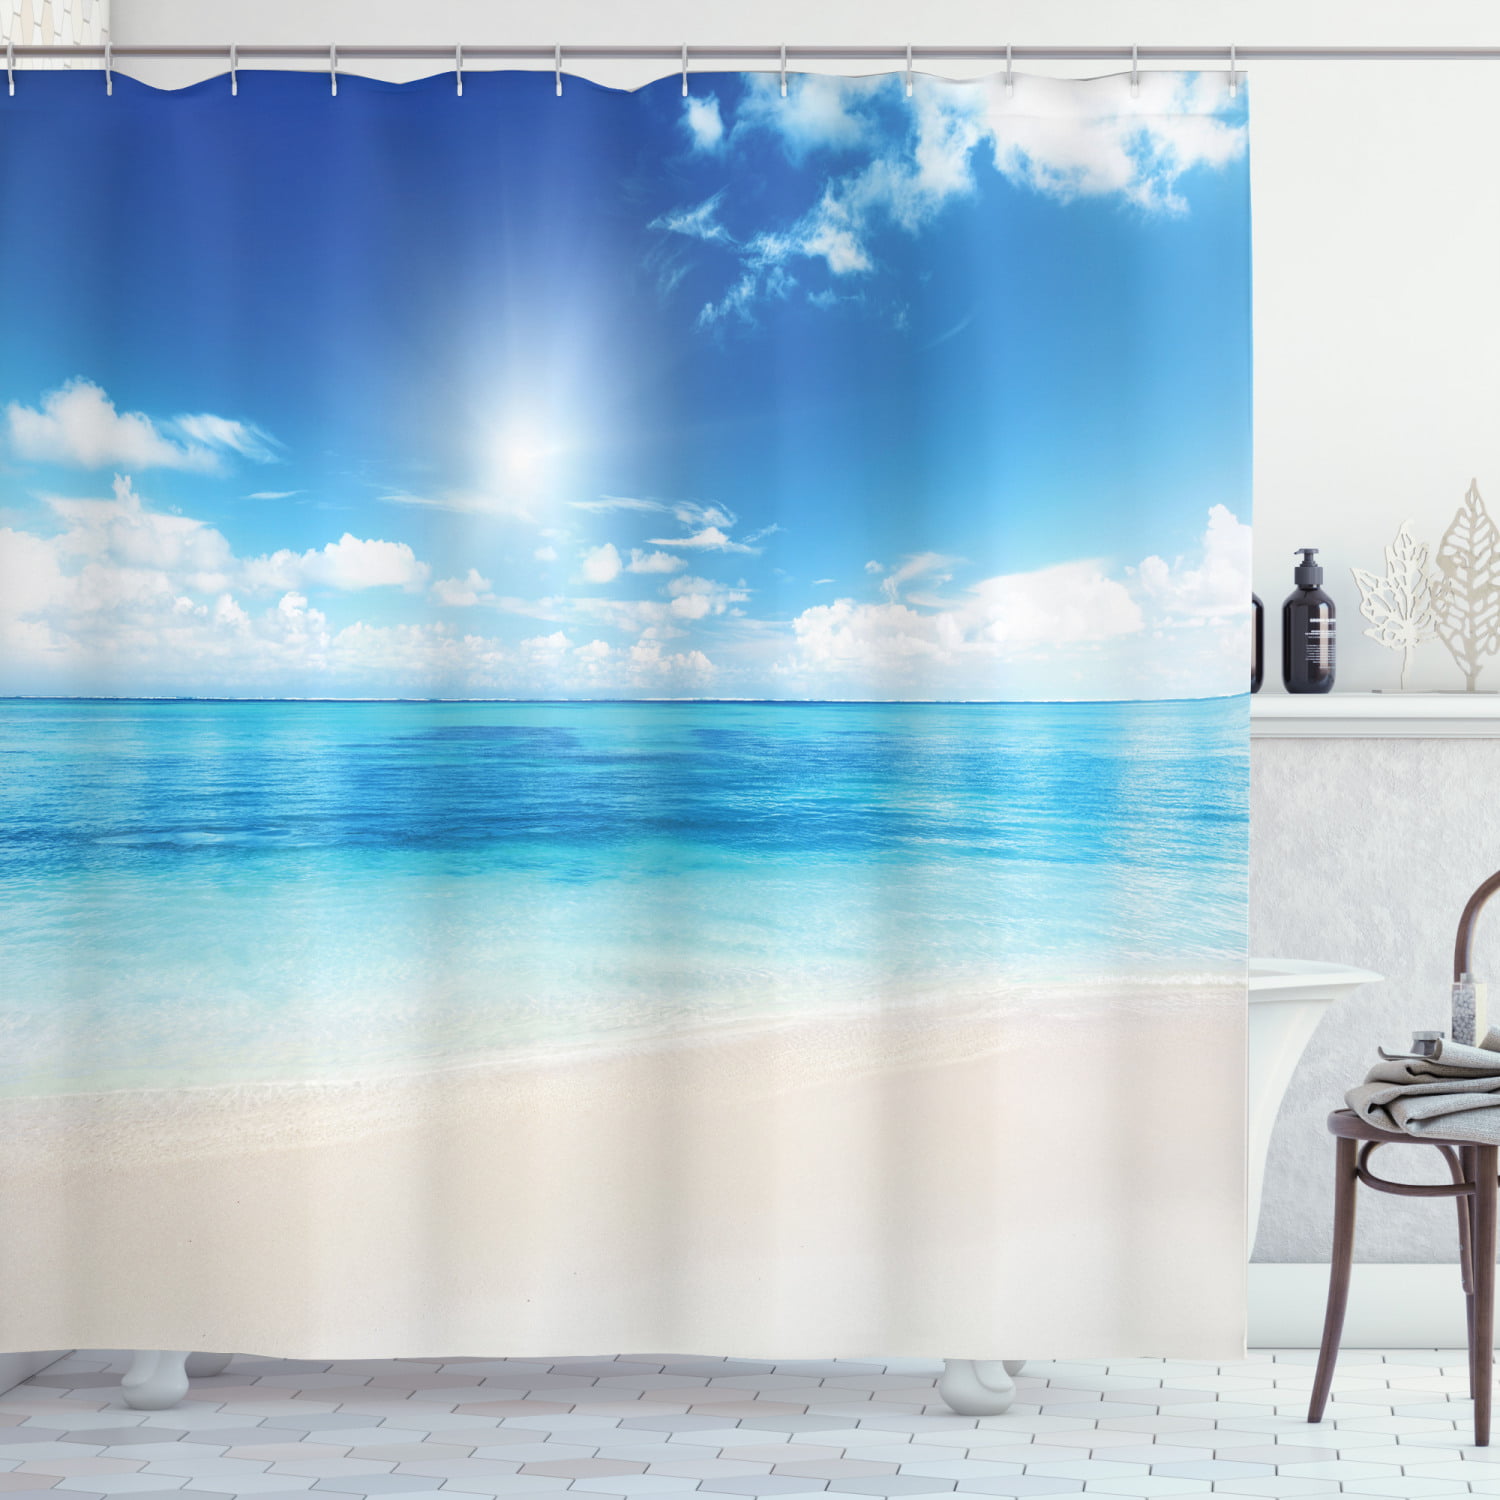 Details about   Beach Shower Curtain Carribean Ocean Island Print for Bathroom 